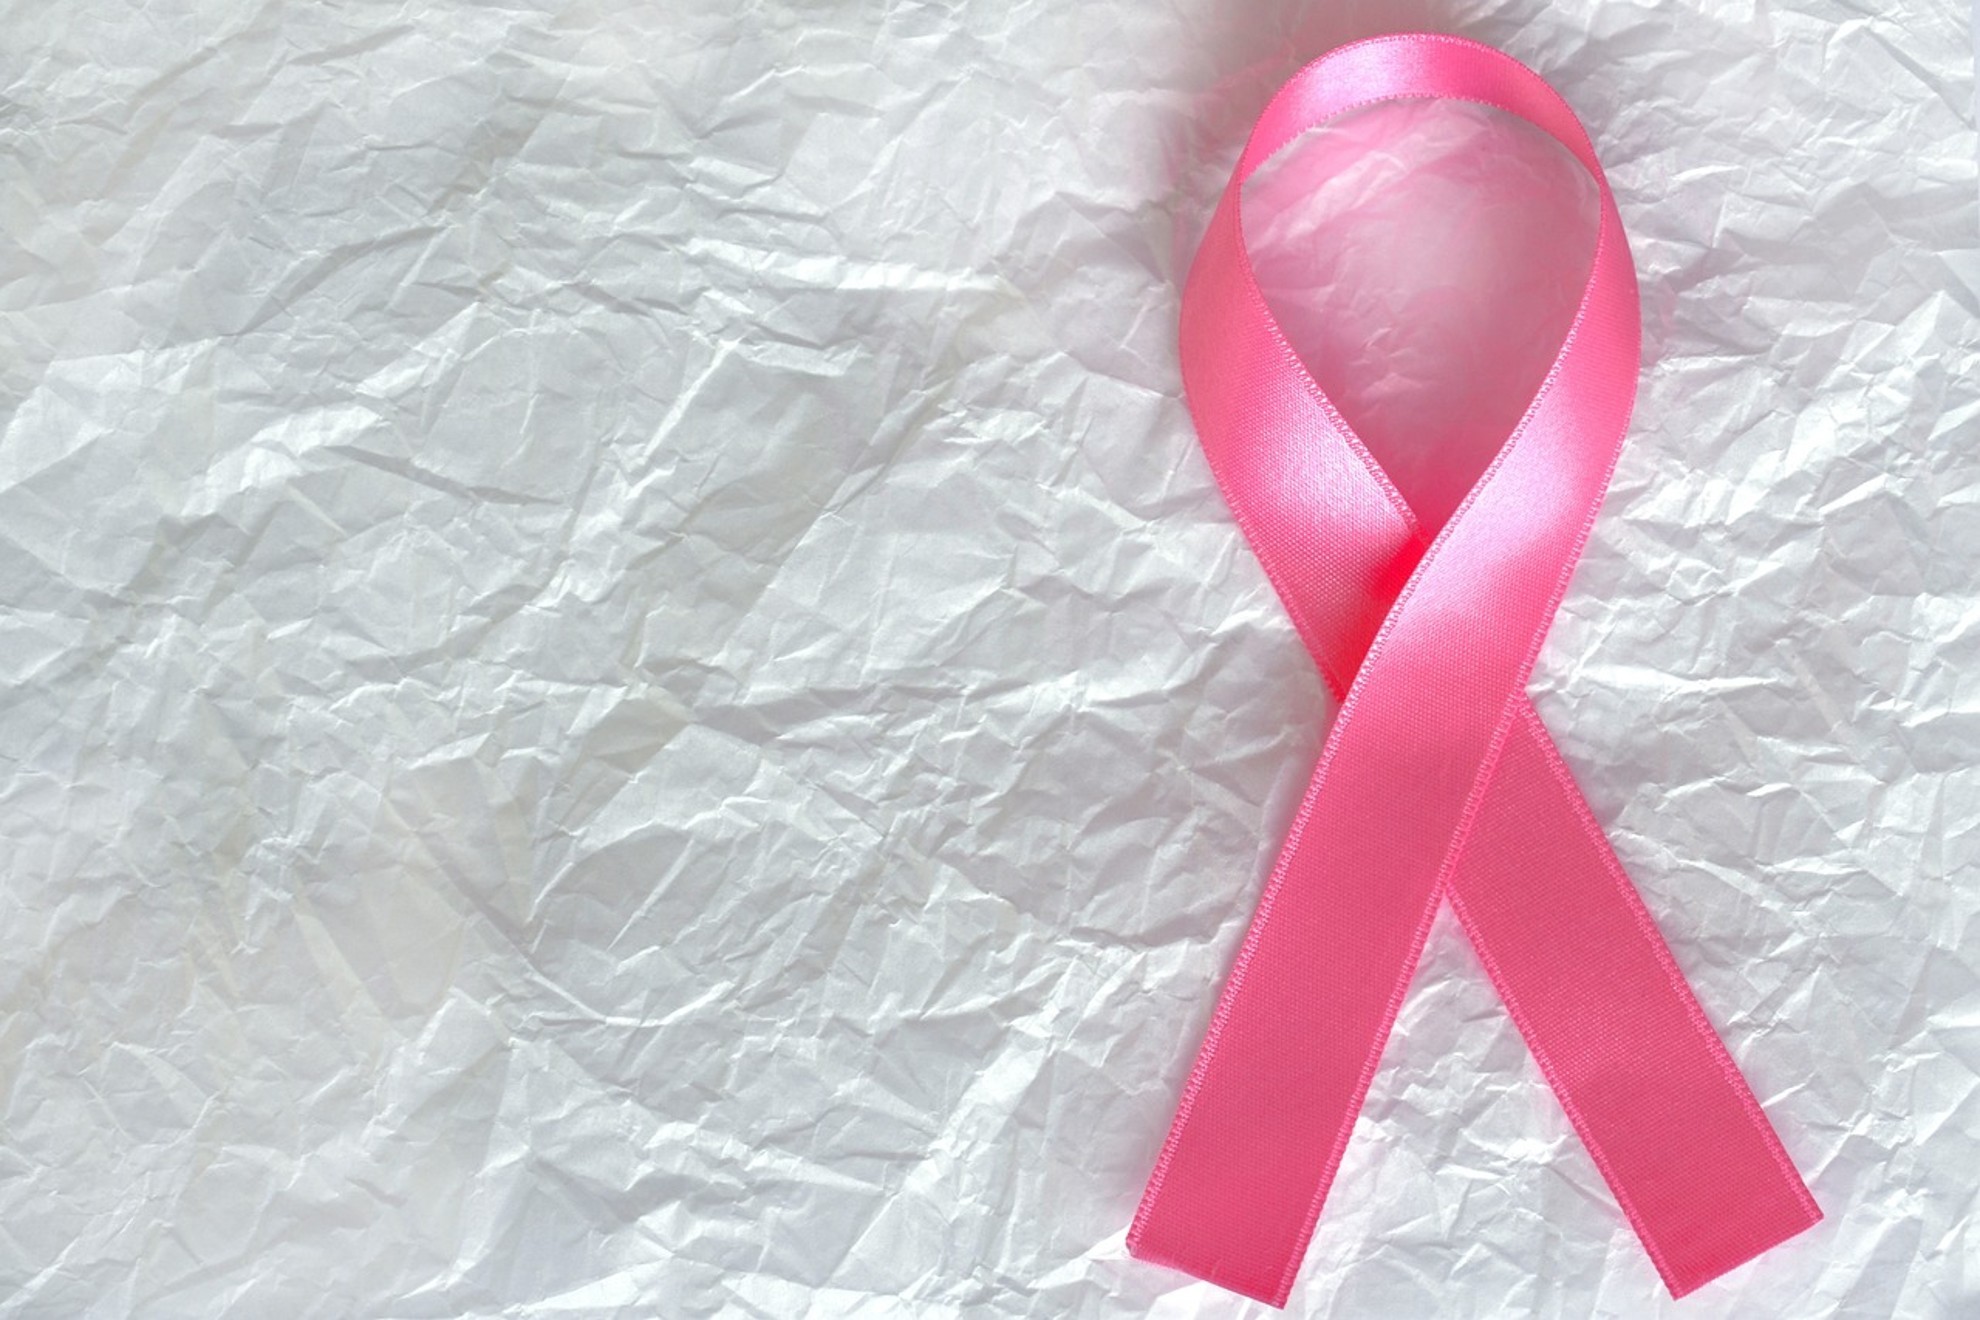 Details 48 Logo Dia Mundial Contra El Cancer De Mama Abzlocal Mx